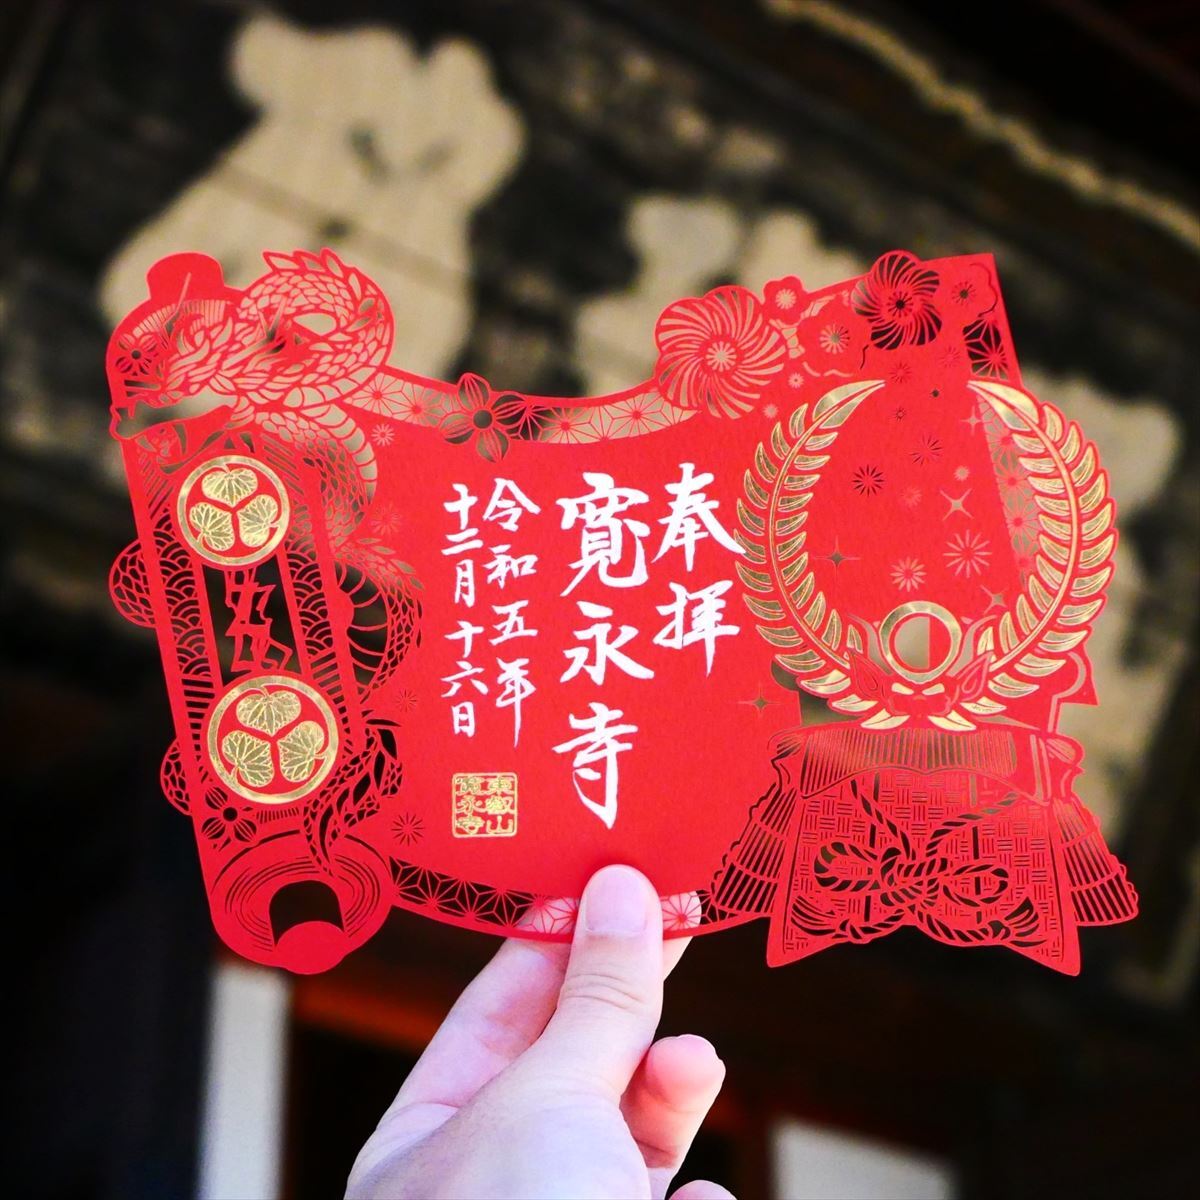 もはや芸術】東京・上野の寛永寺で2種類の「限定切り絵御朱印」の授与 